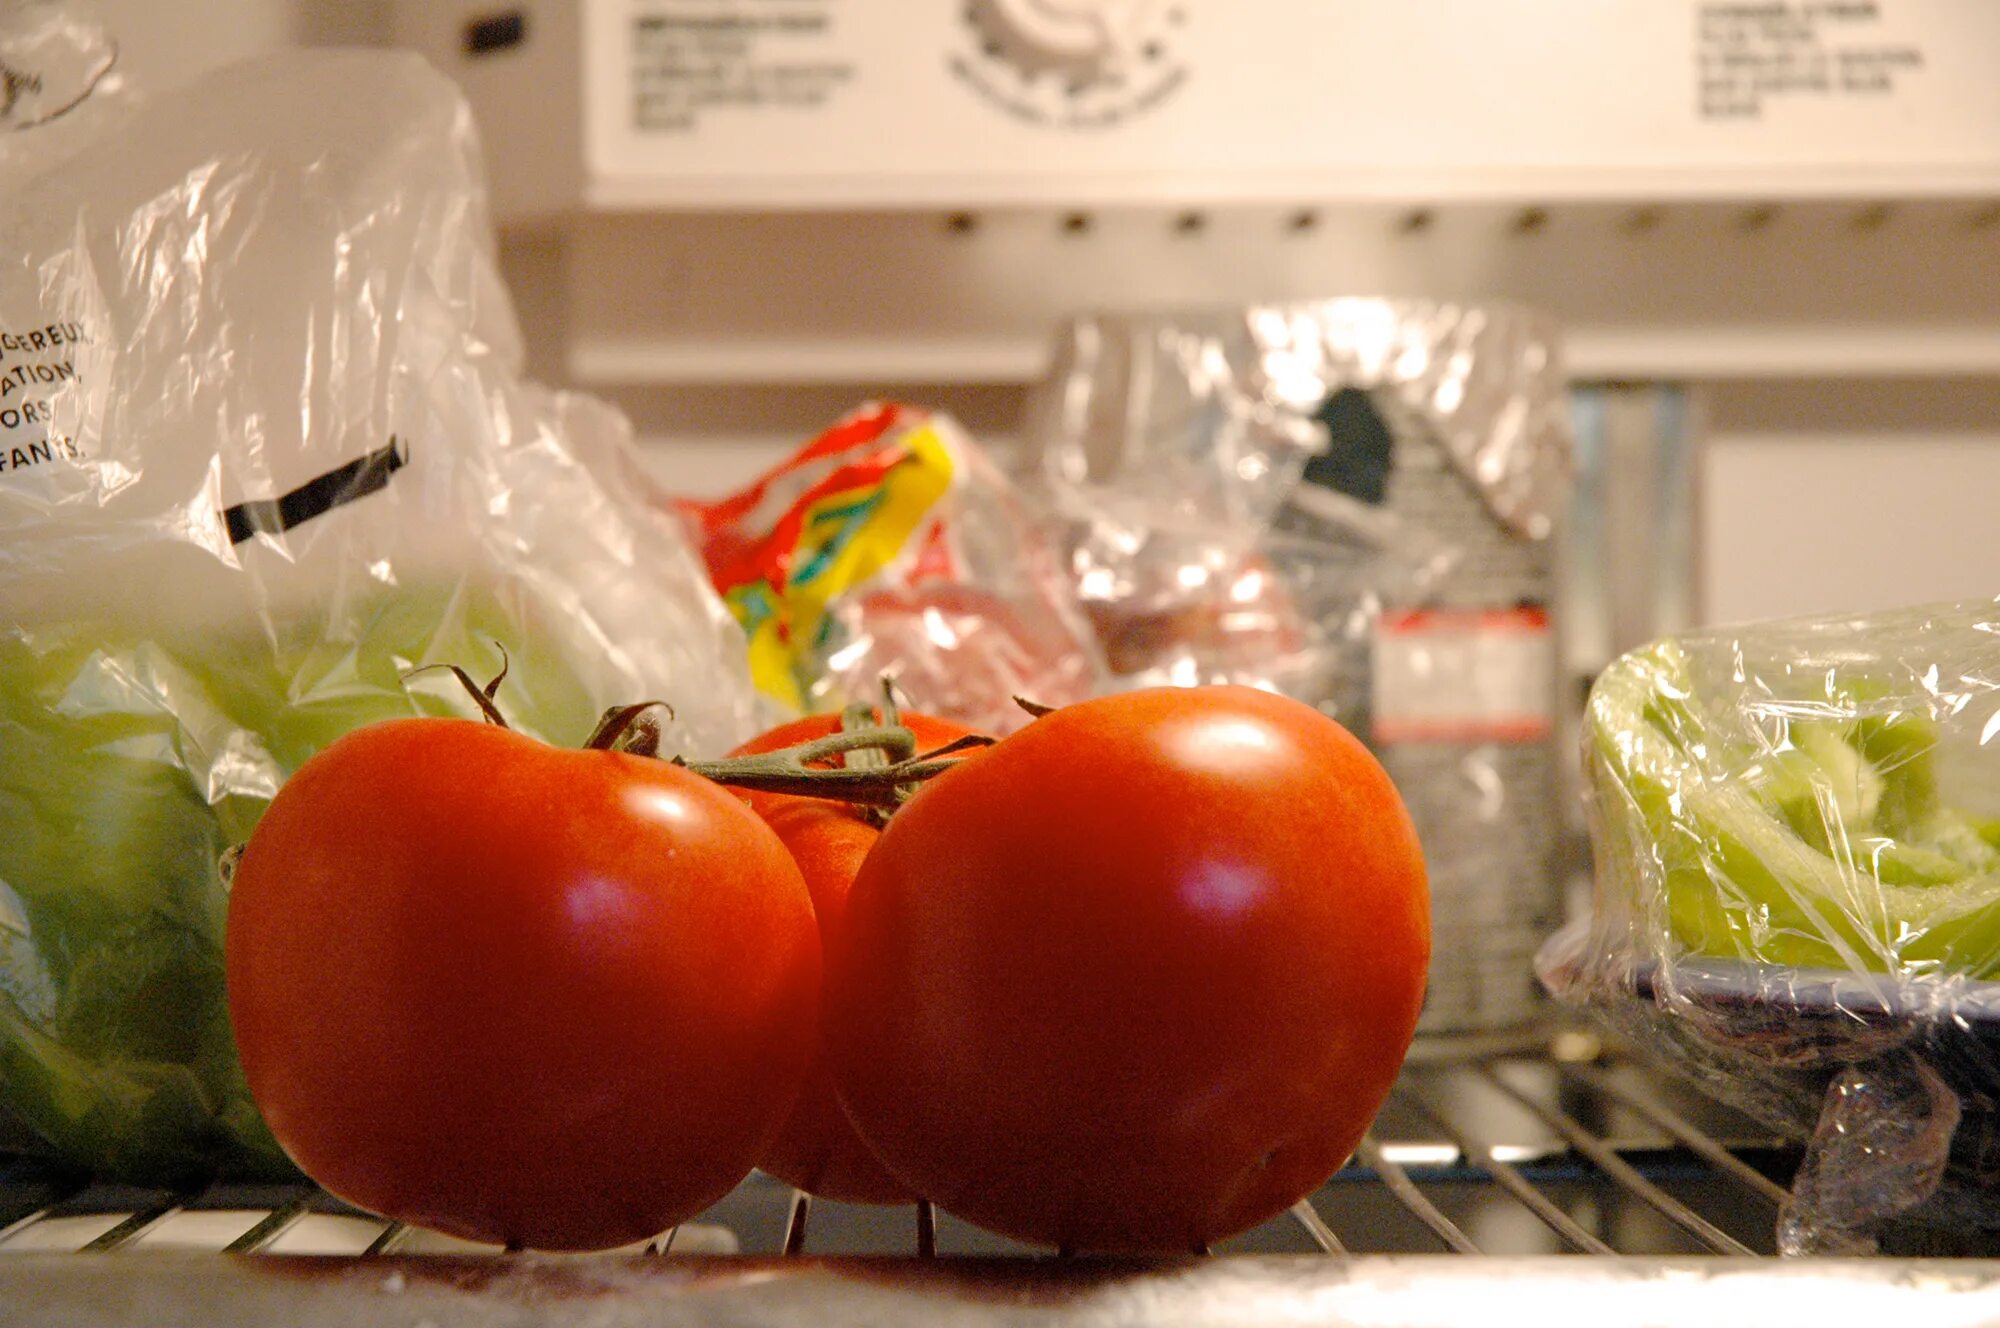 Помидоры в холодильнике. Помидоры в ящике. Хранение помидоров. Хранить помидоры в холодильнике. There are some tomatoes in the fridge